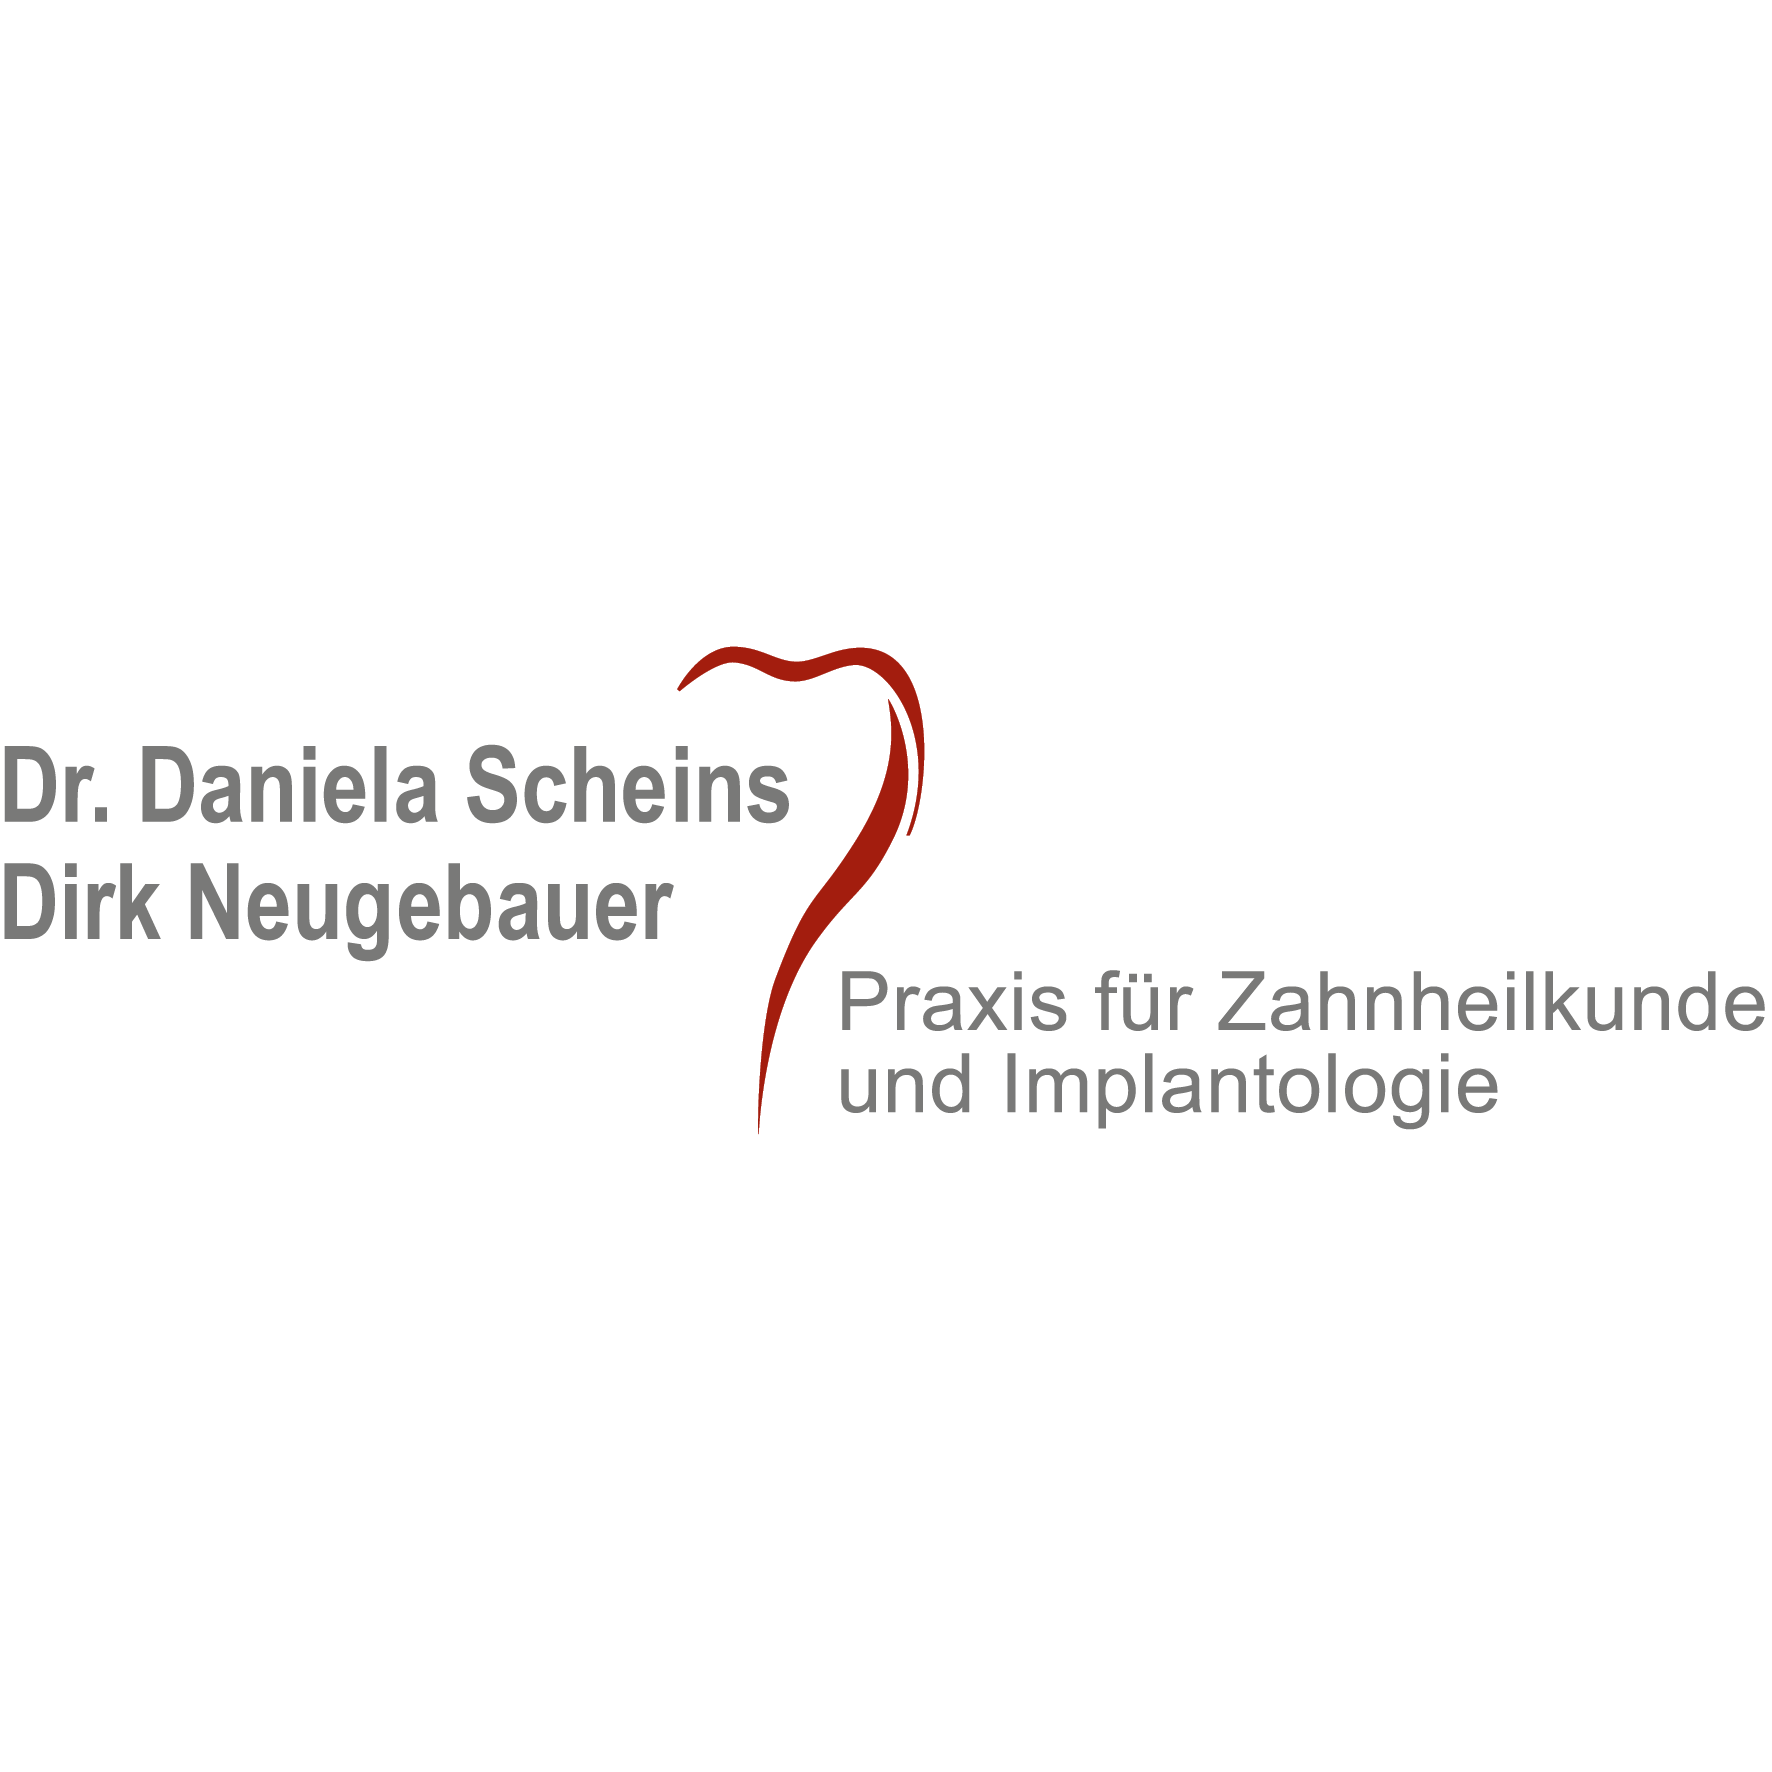 Dr. D. Scheins & D. Neugebauer  